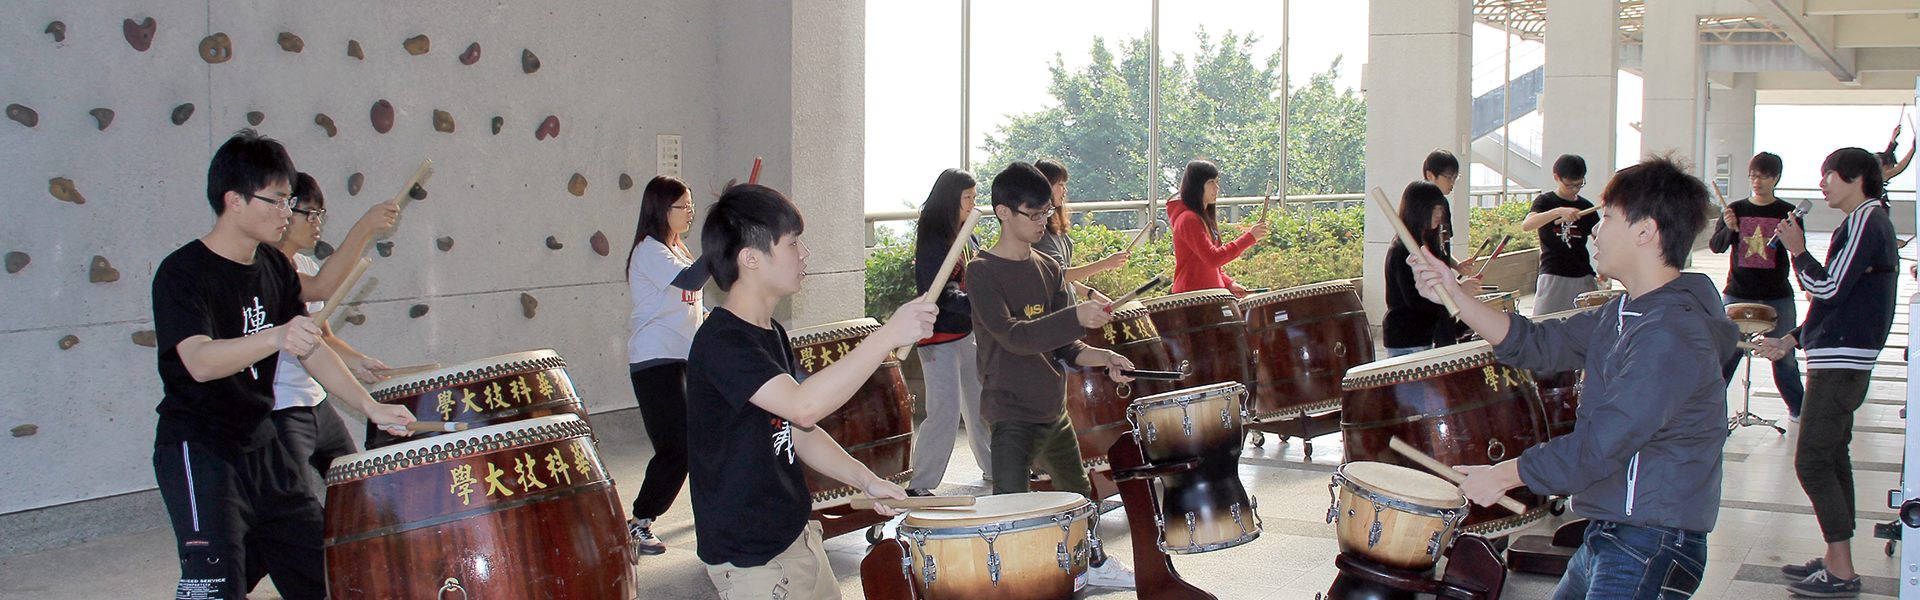 文宣:學生社團練習打鼓照片